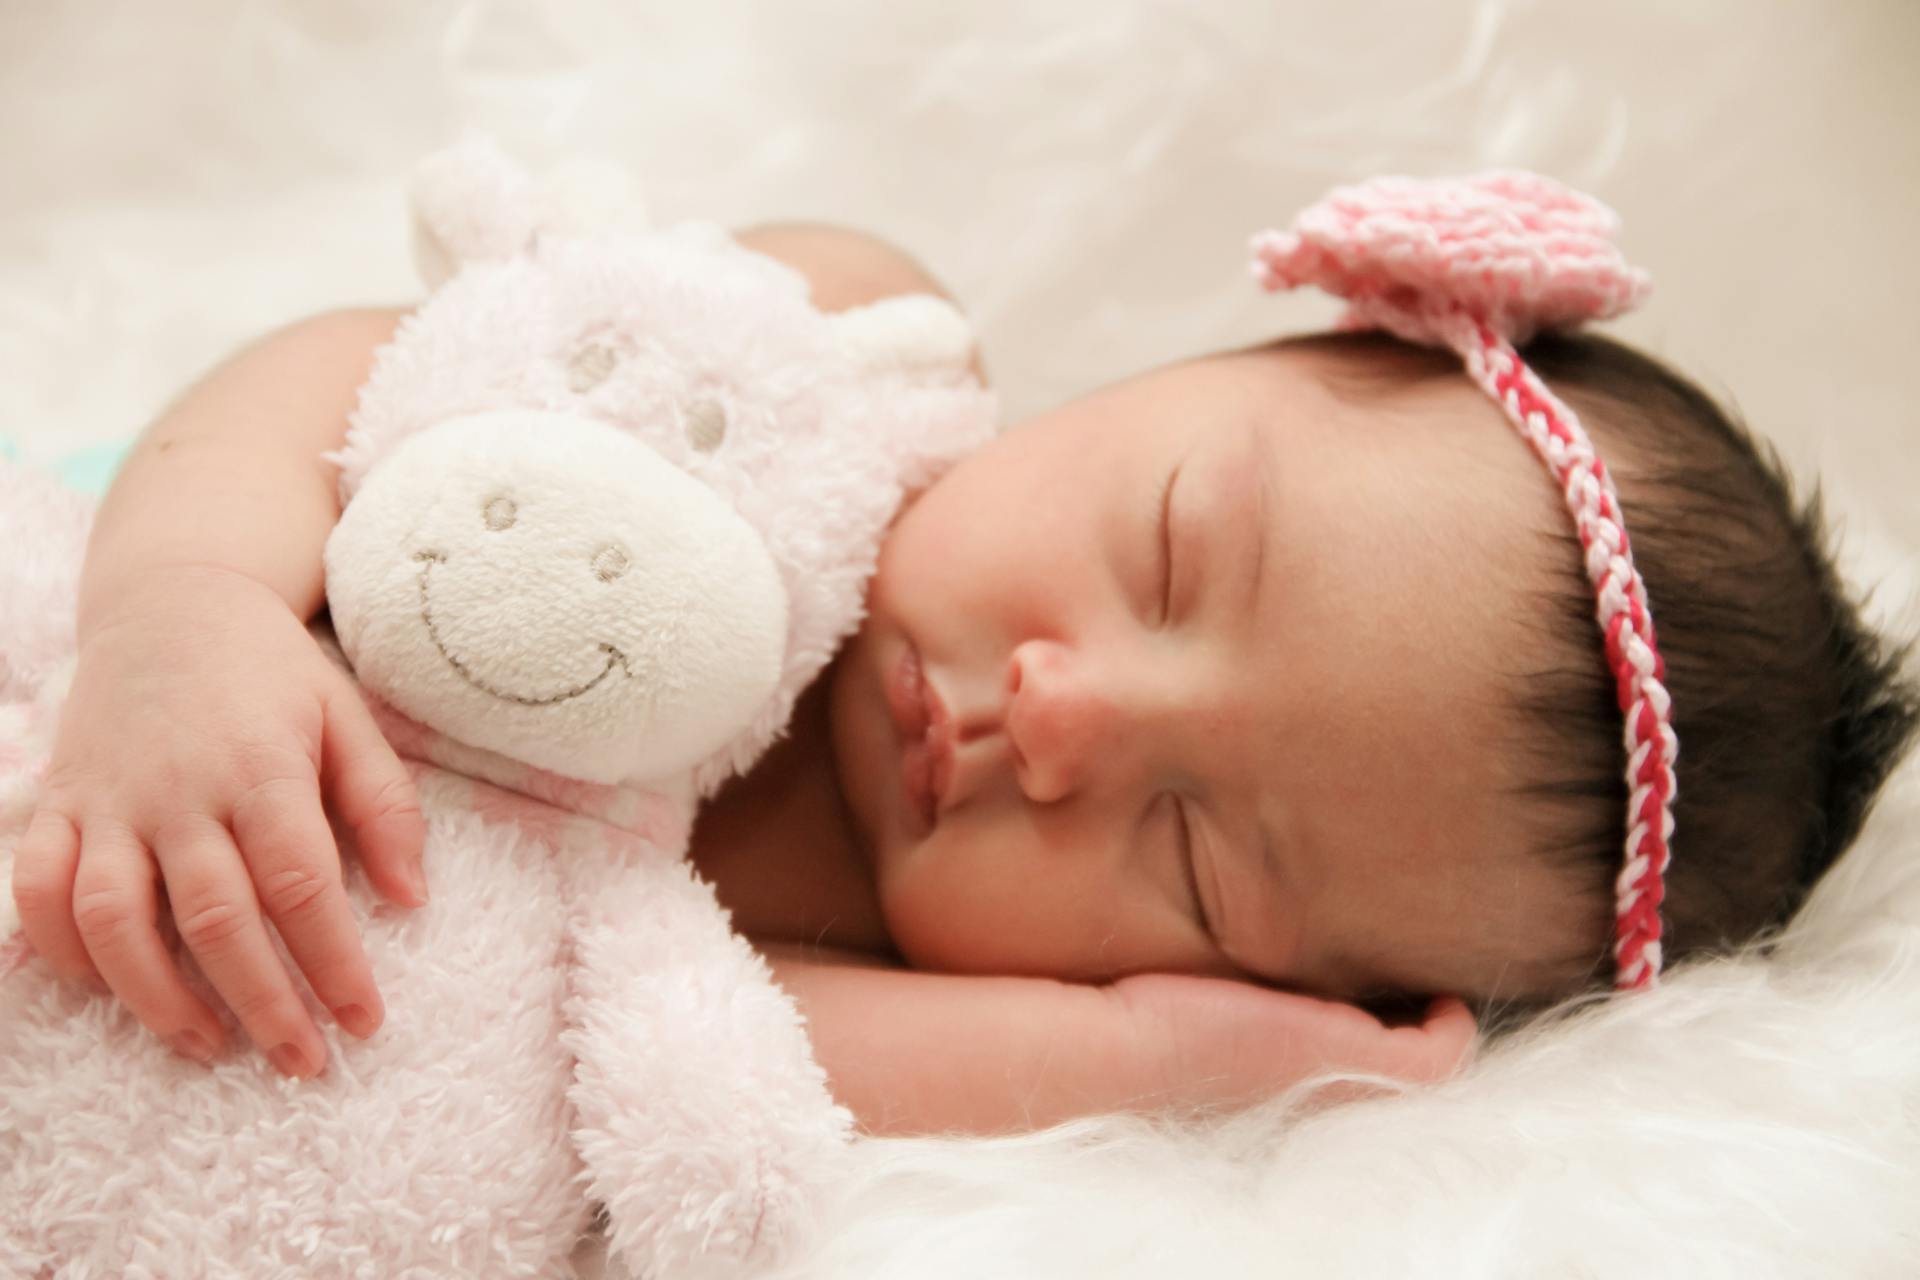 Una niña recién nacida | Fuente: Pexels